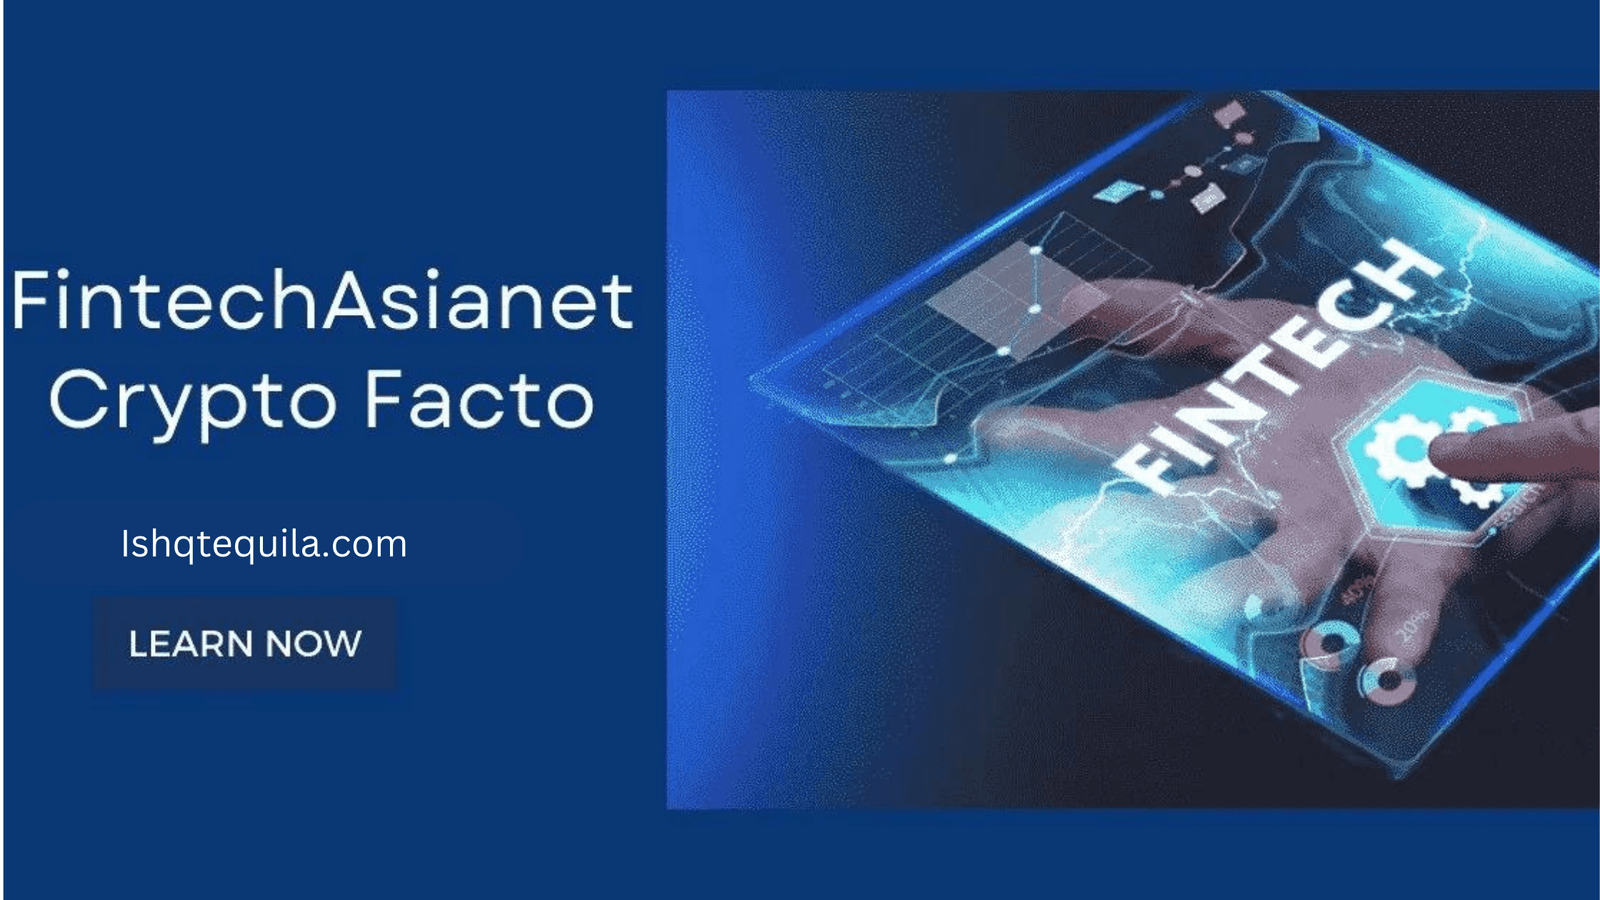 FintechAsiaNet Crypto Facto